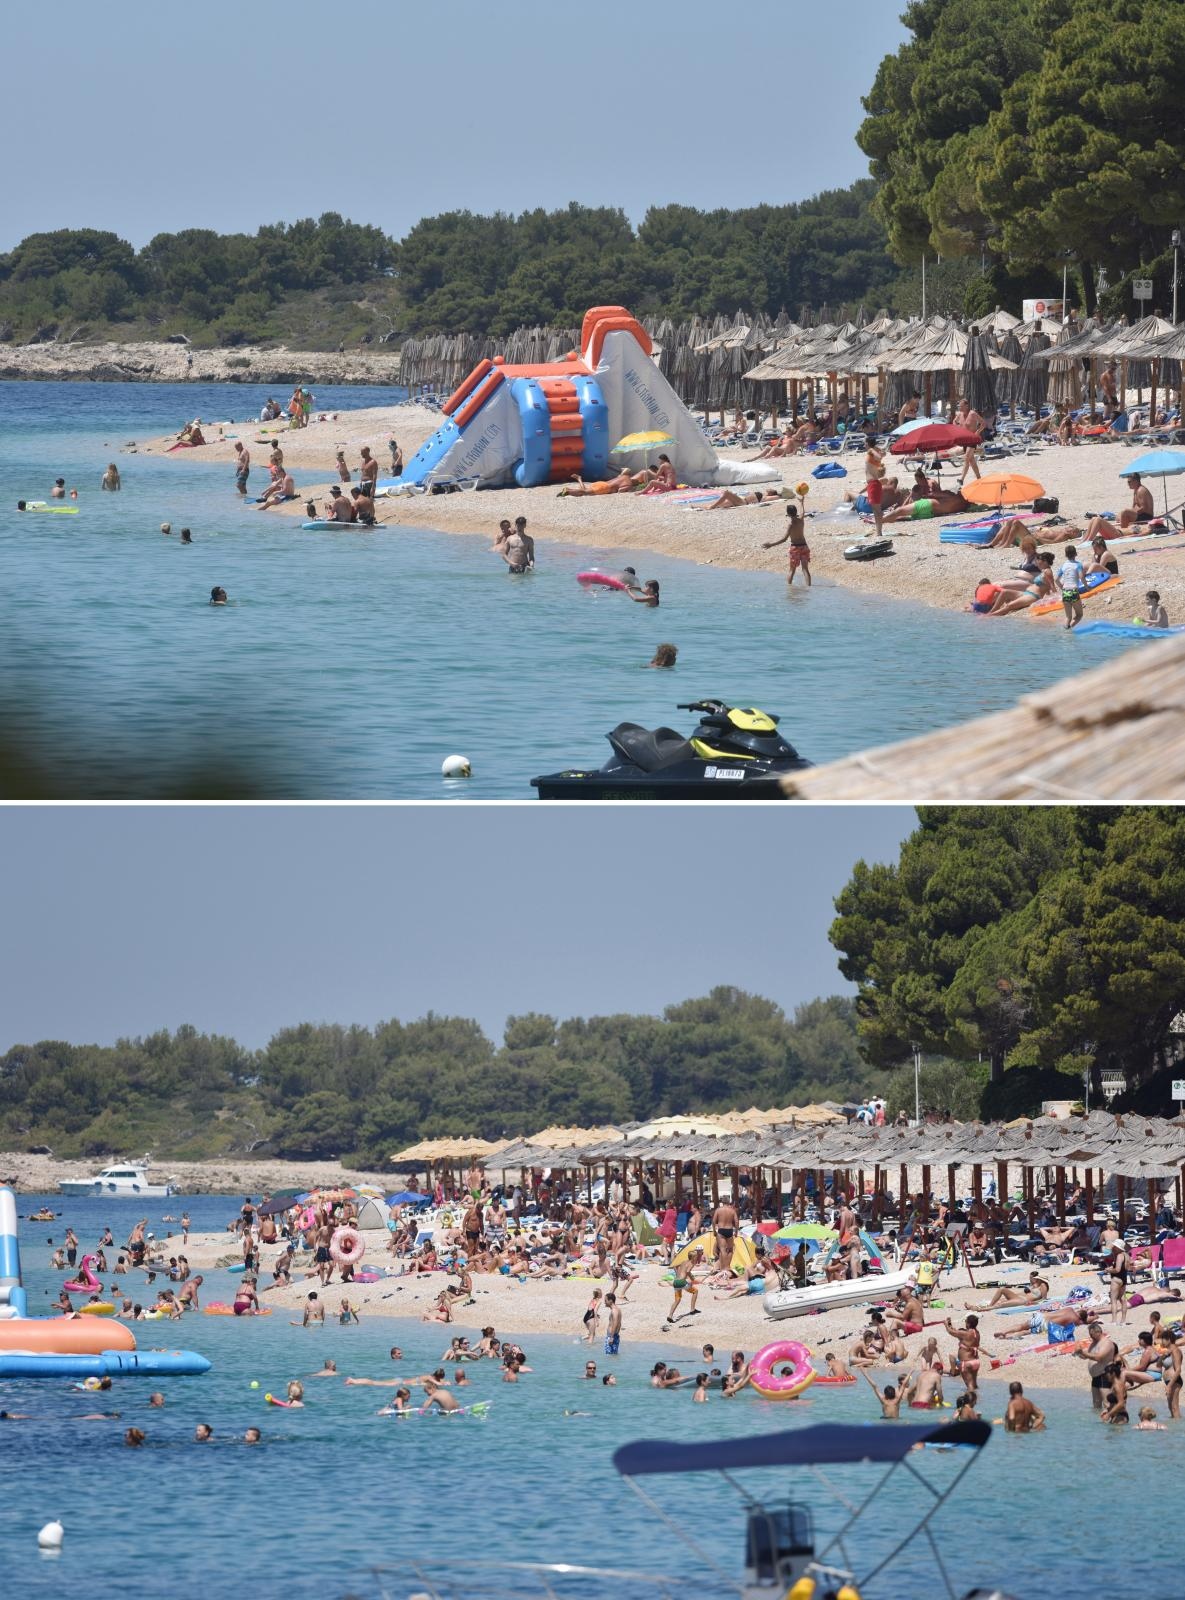 Prema novijim podacima, u Hrvatsku je u prvih šest mjeseci došlo 1,6 milijuna turista koji su ostvarili 7,6 milijuna noćenja, što je oko 30 posto lanjskog rezultata za isti period. Ovo je plaža u Primoštenu.